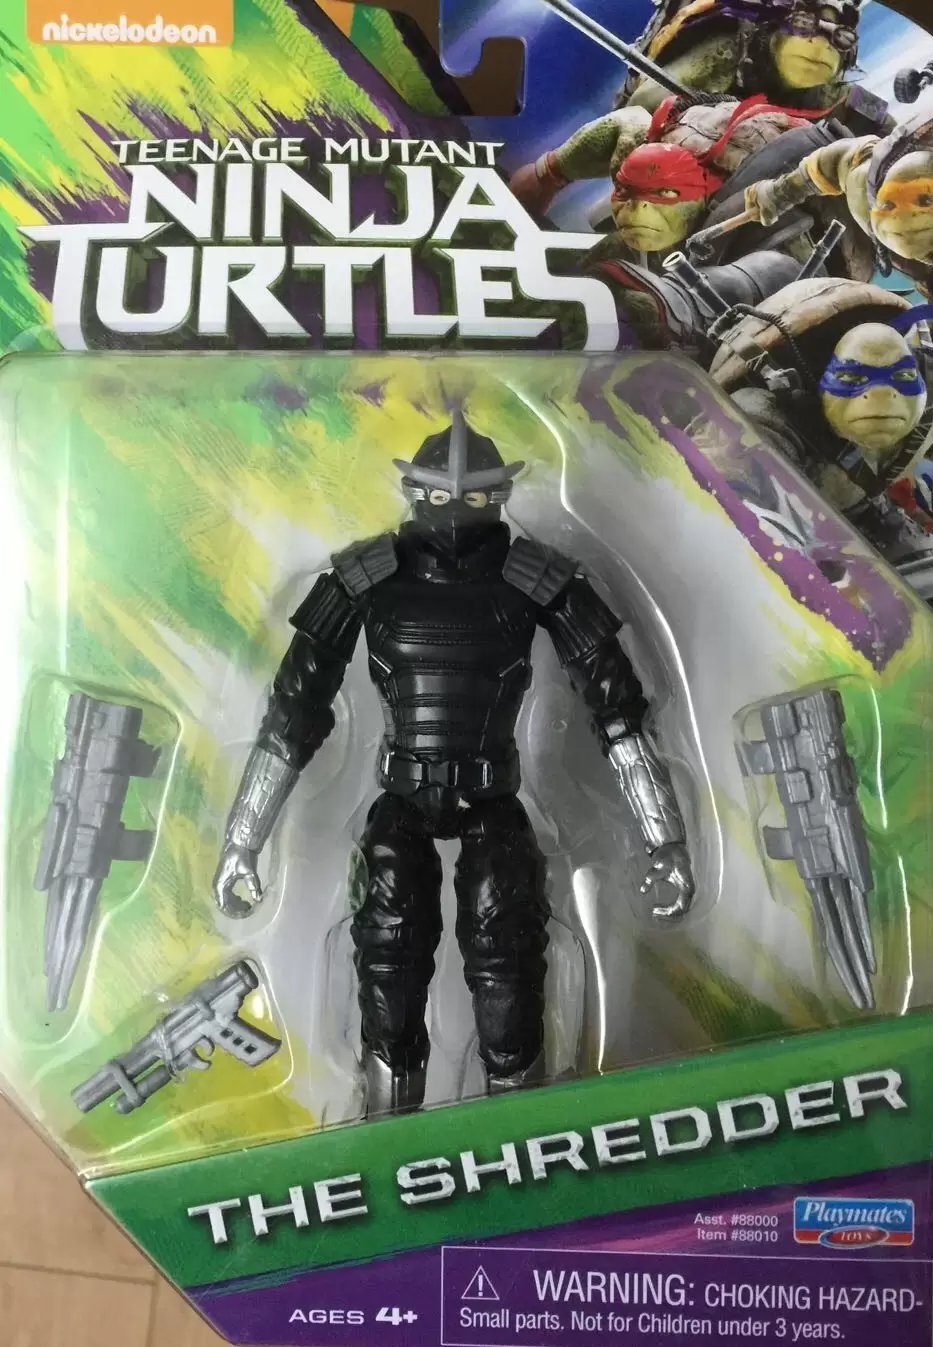 Ninja Turtles II (2016 Movie) - The Shredder